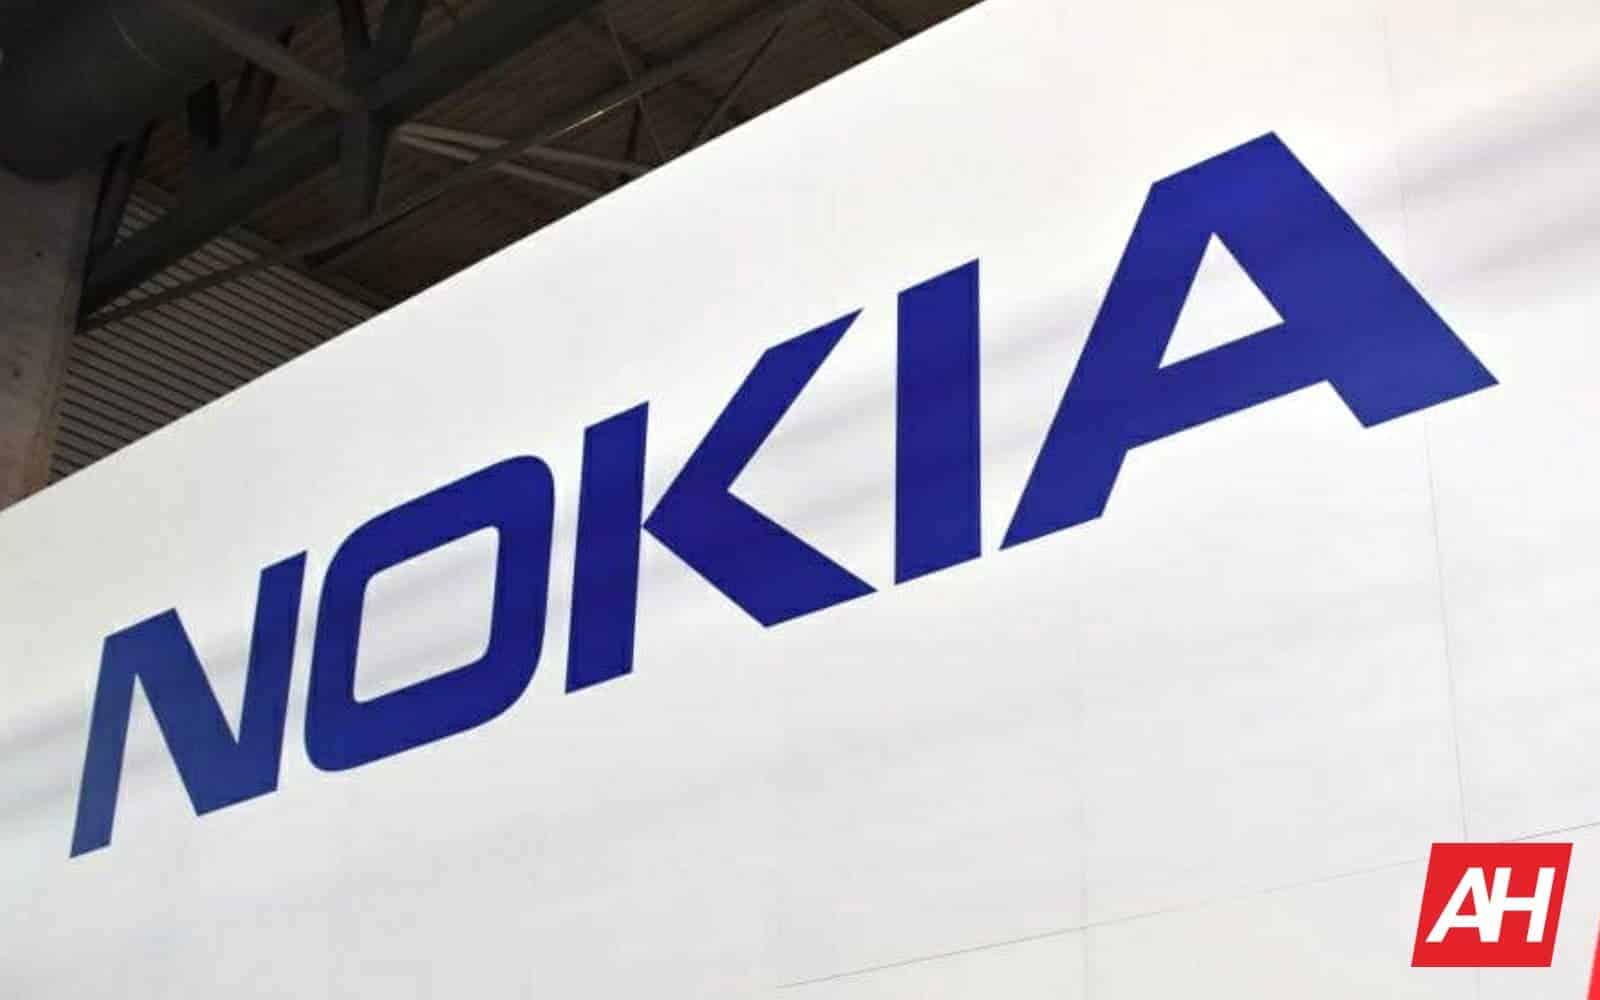 Новые смартфоны Nokia могут появиться 8 апреля, событие подтверждено